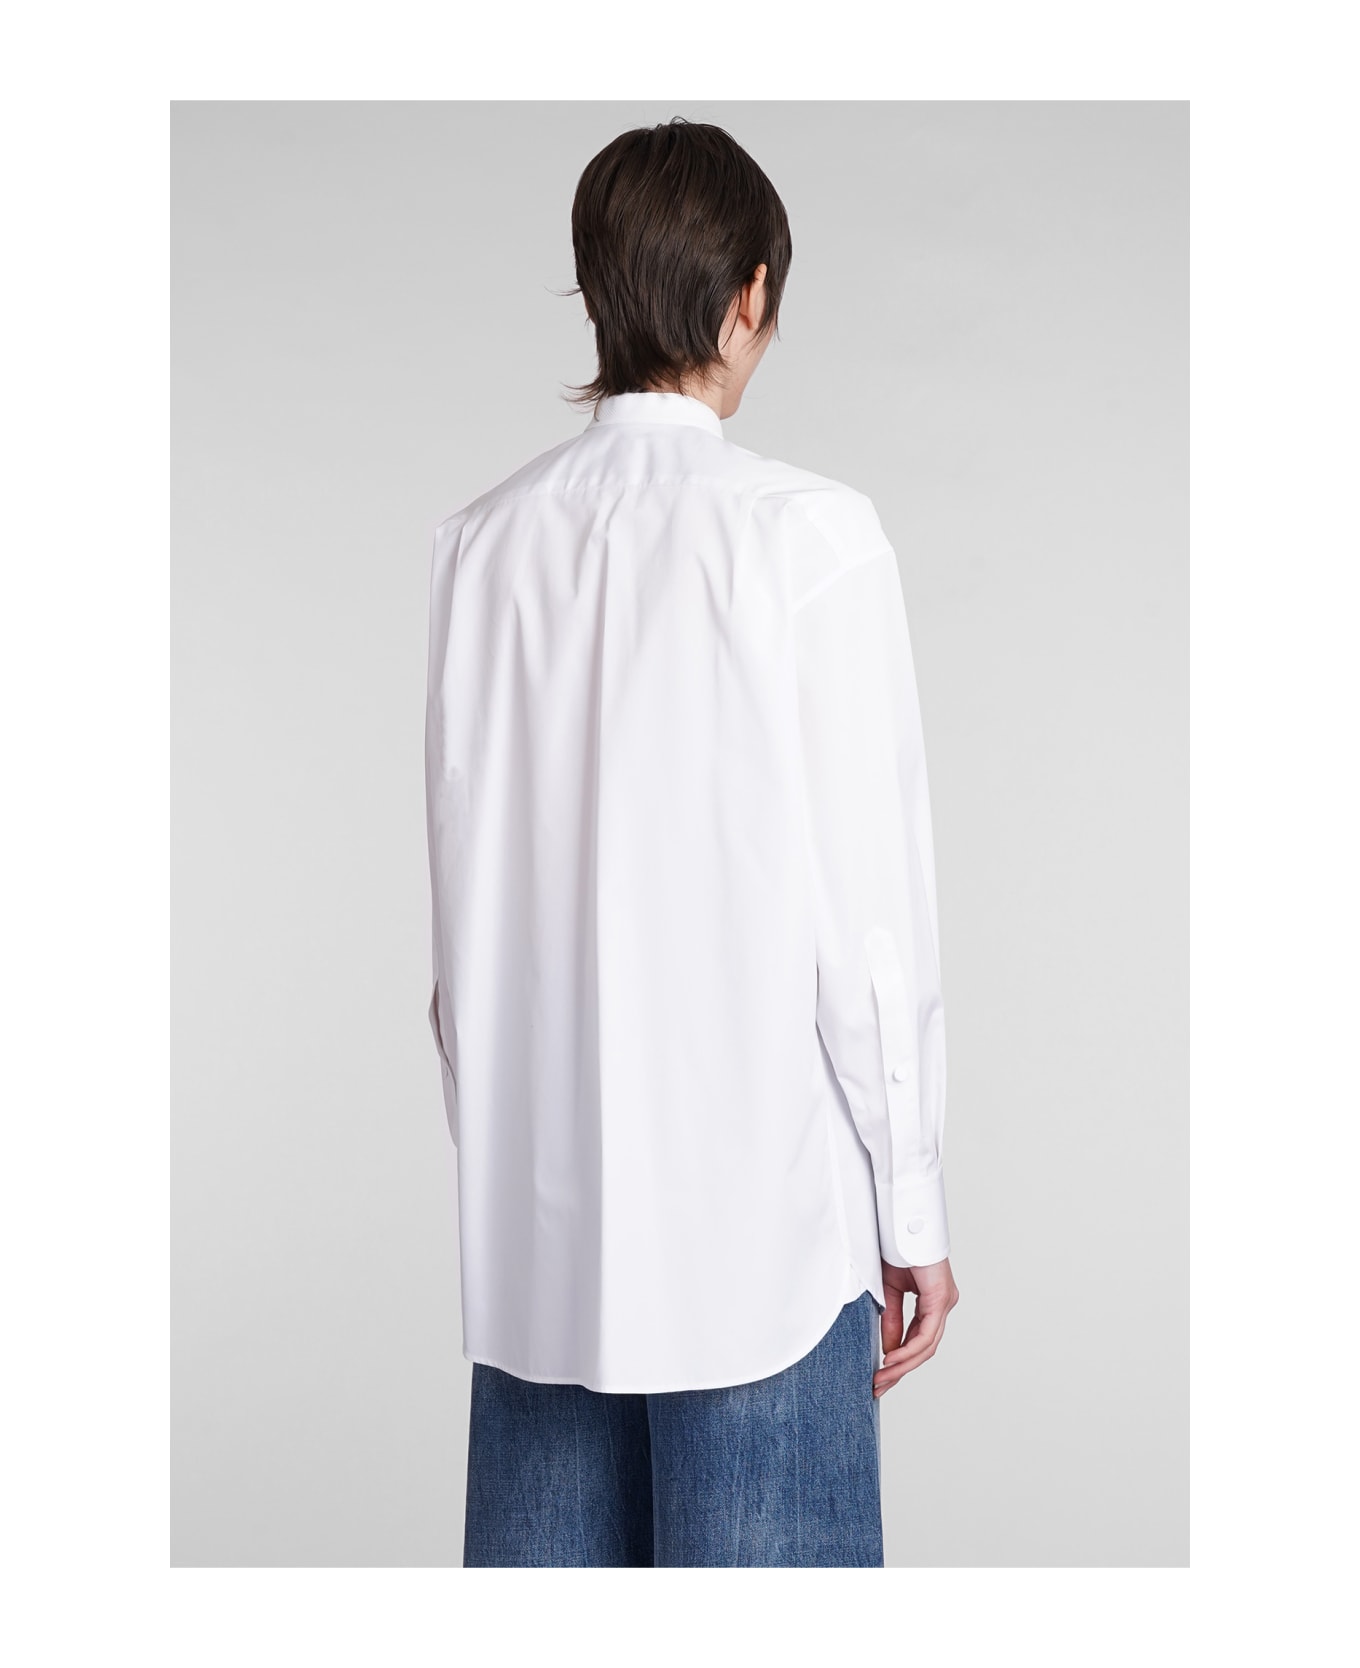 Stella McCartney Shirt In White Cotton - white ブラウス